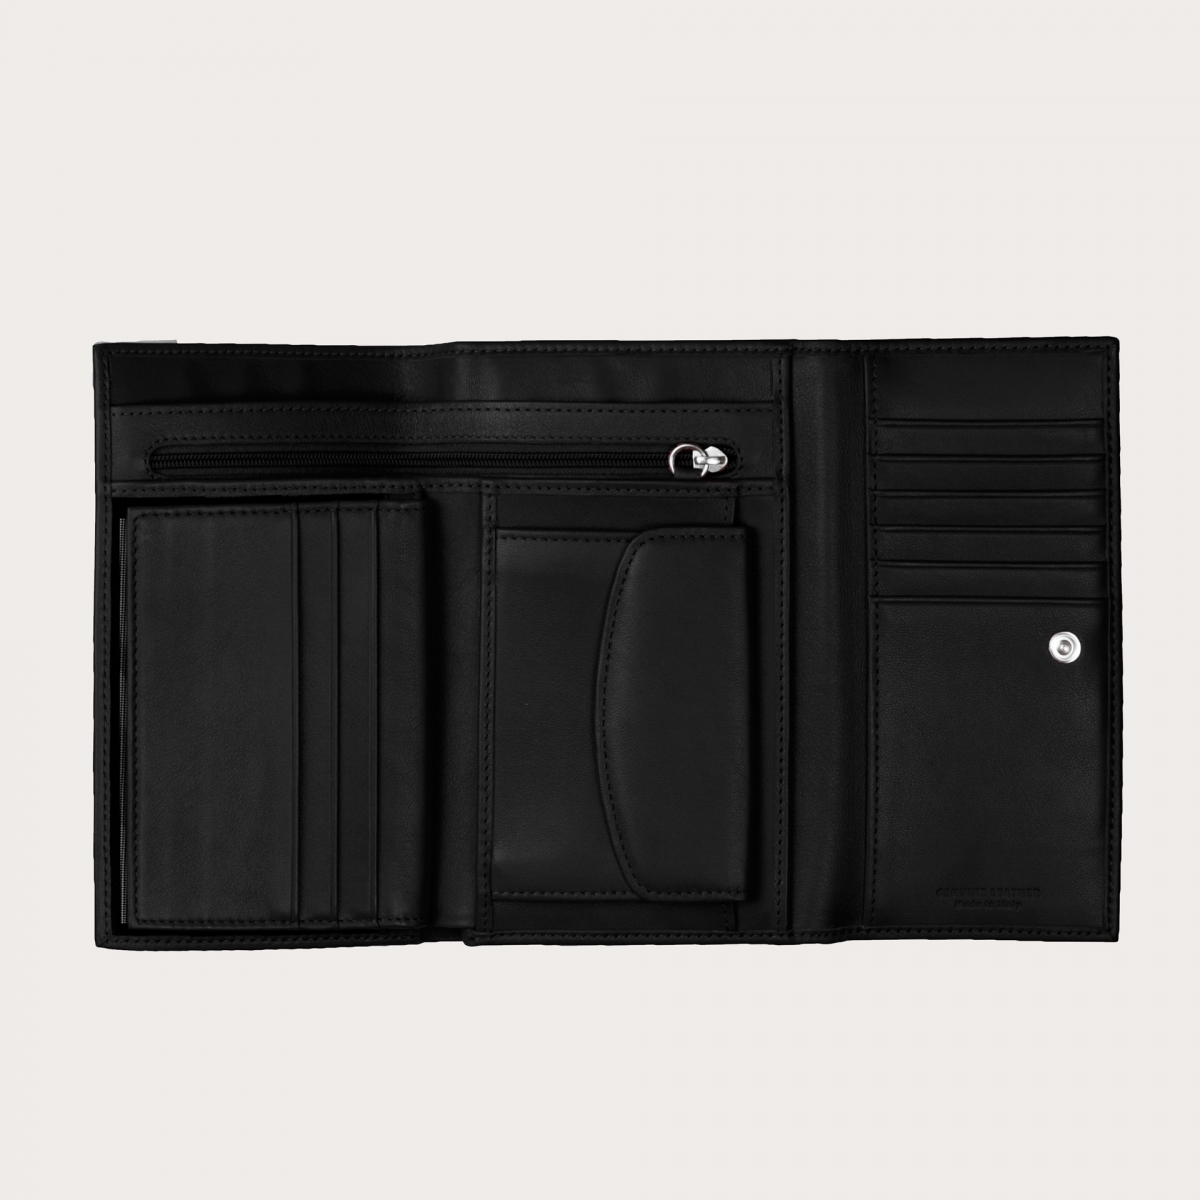 BRUCLE Geldbörse aus echtem Vollnarbenleder mit Kartenfach, Dokumentenfach und Geldbörse, Farbe schwarz